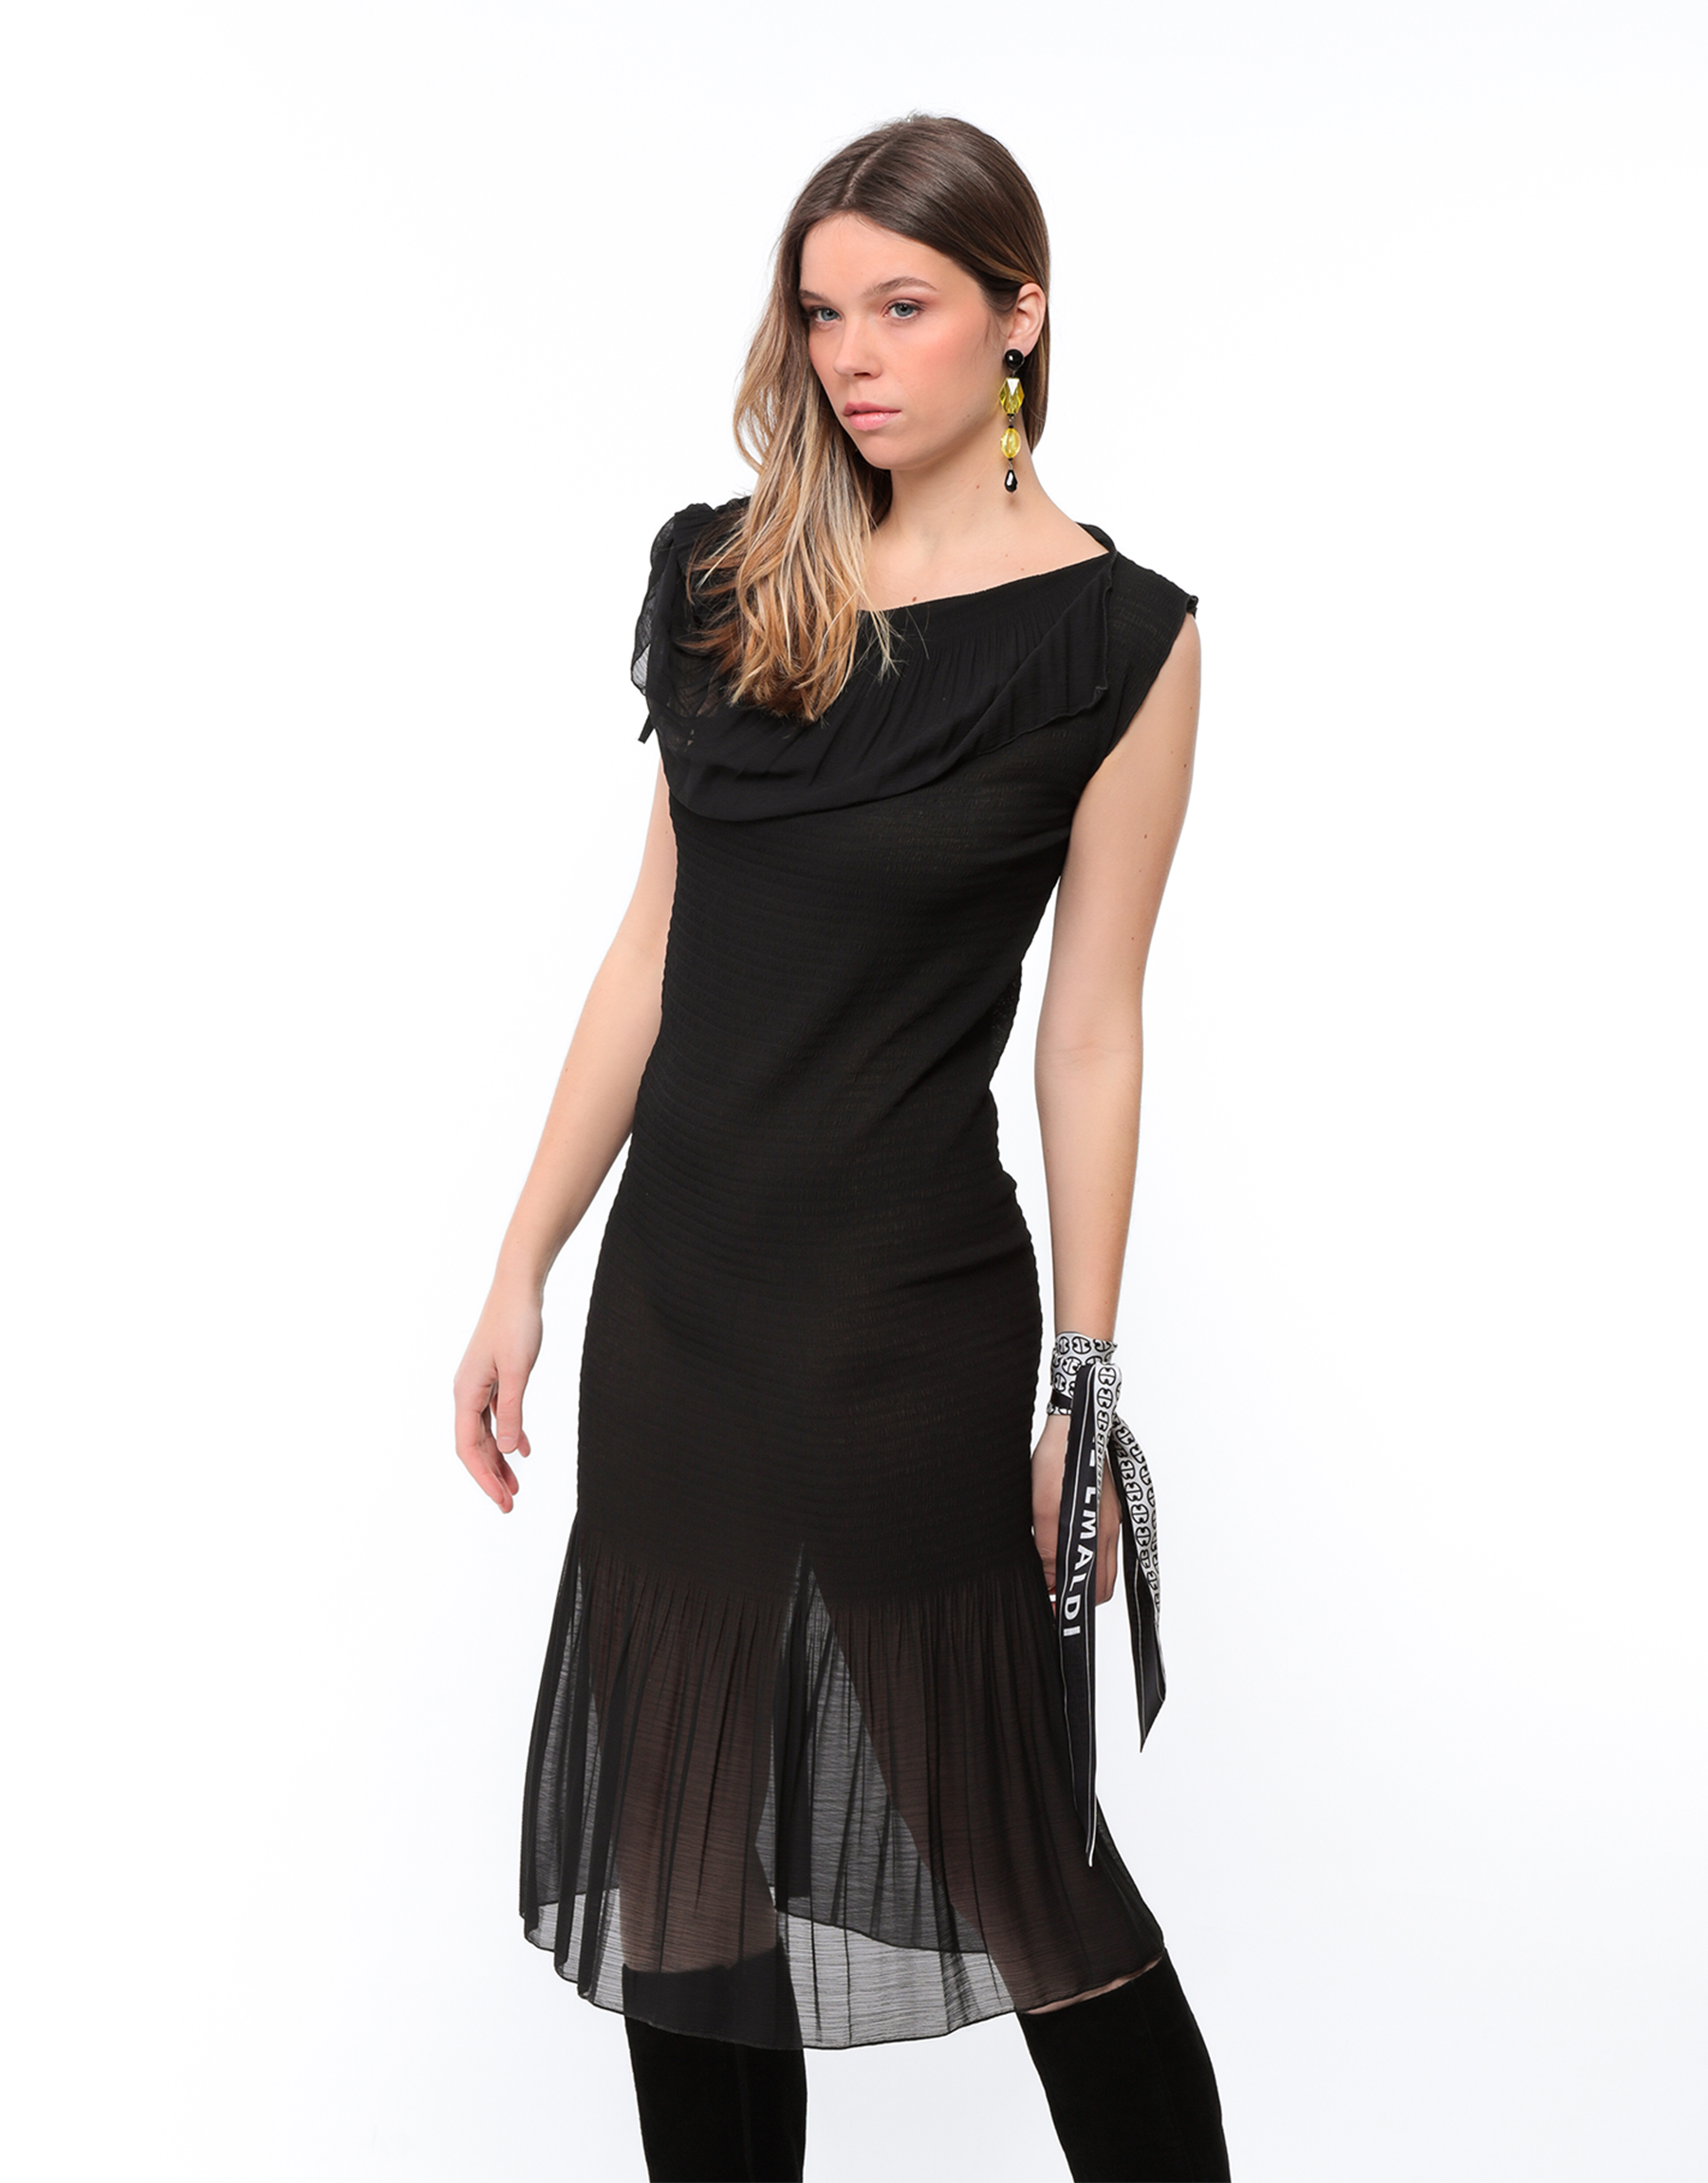 Long dress in black pleated muslin